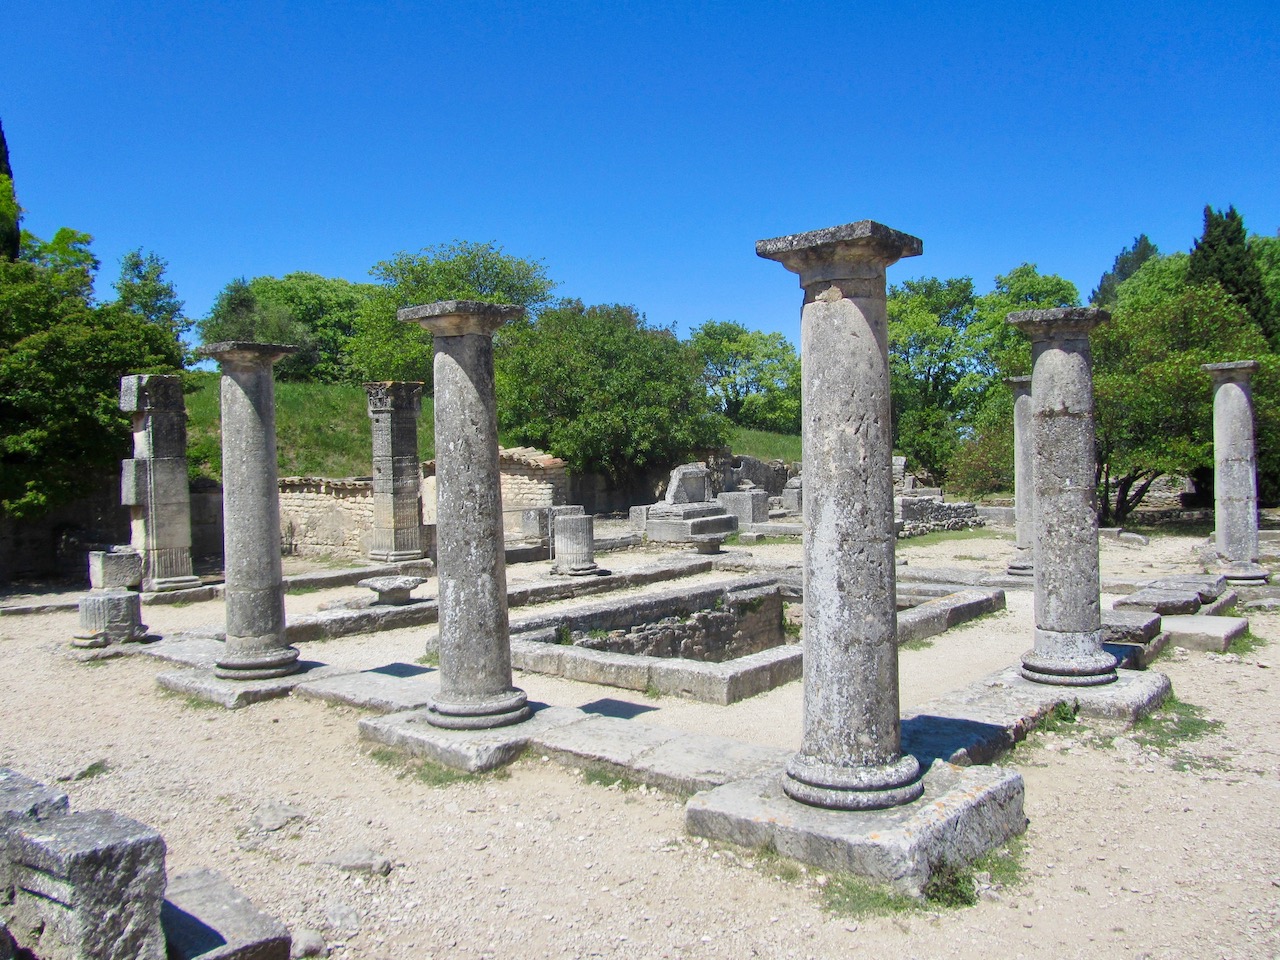 Pillars at Glanum